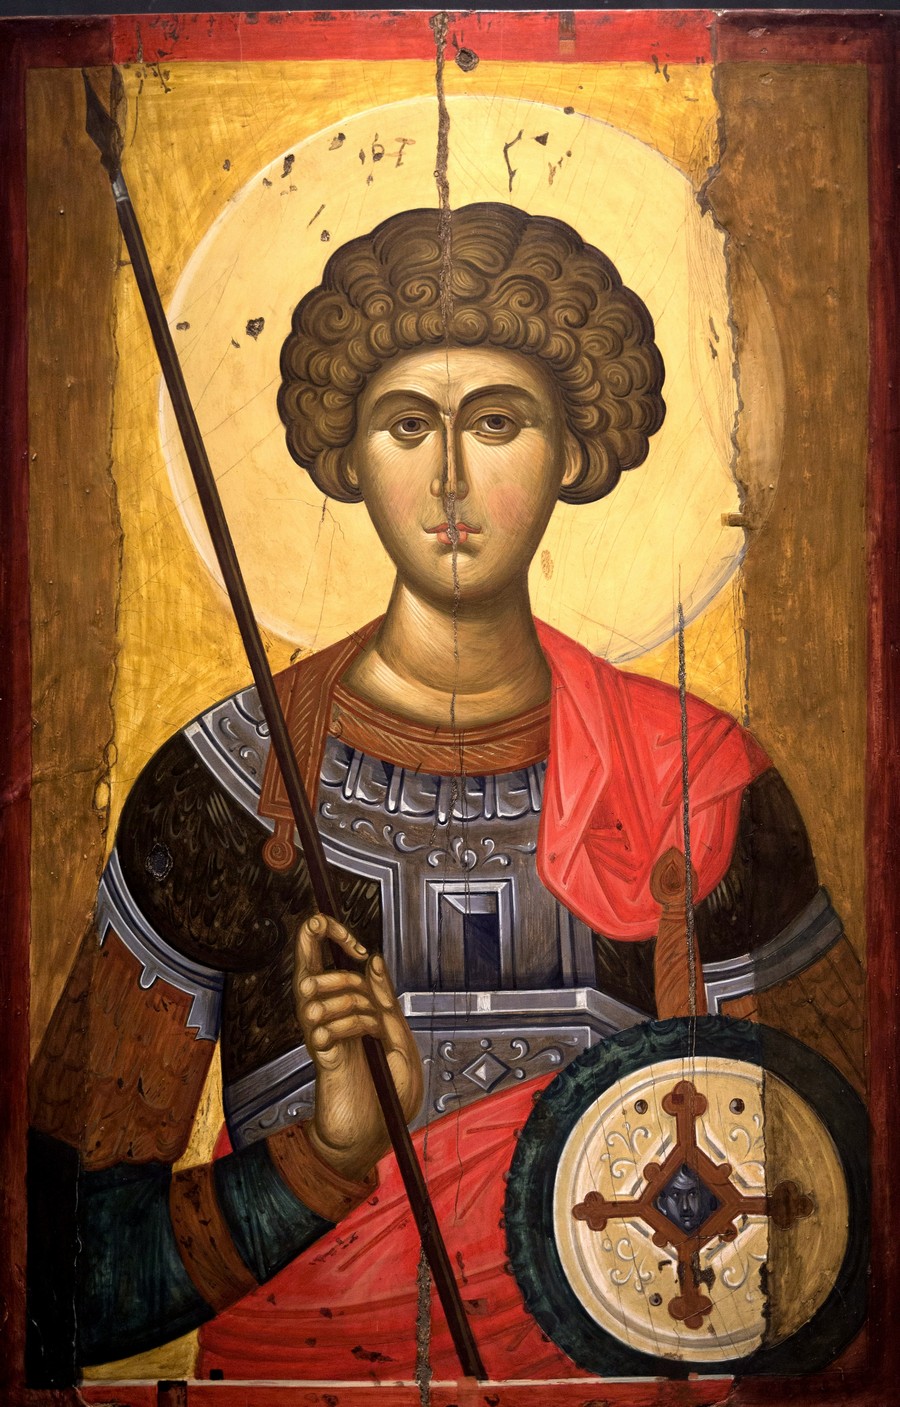 Святой Великомученик Георгий Победоносец. Византийская икона XIV века. Византийский музей в Афинах.